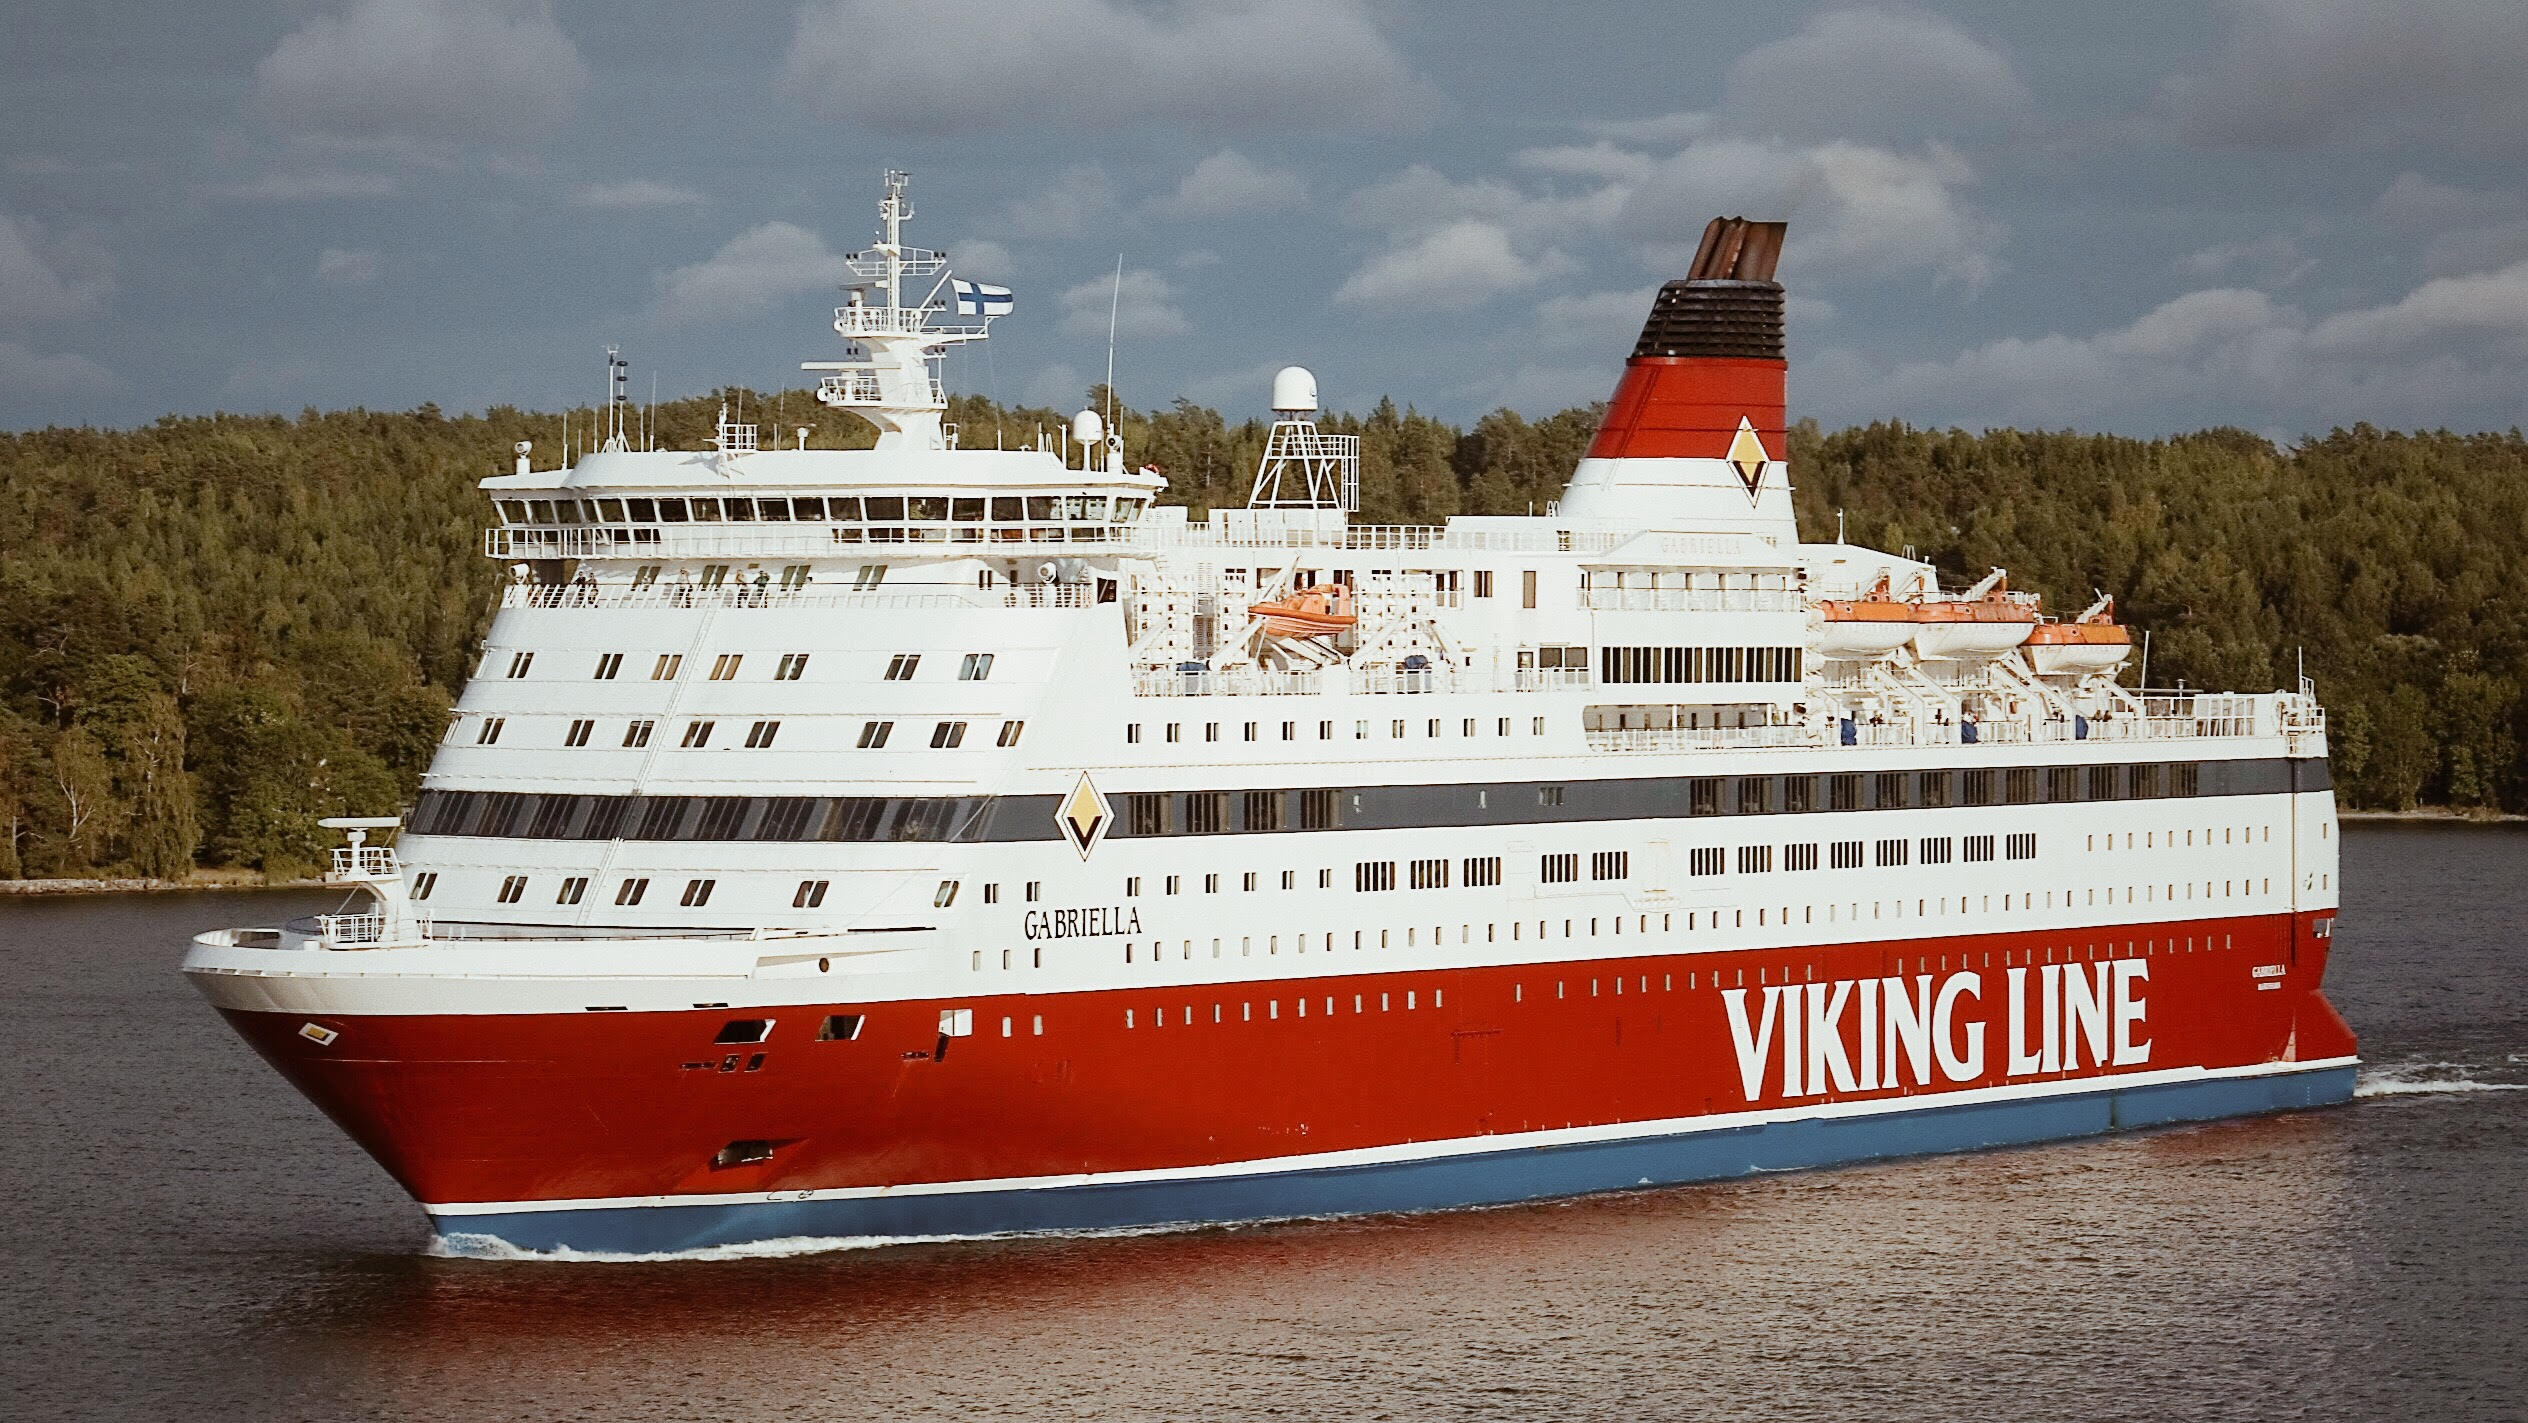 viking line metal cruise